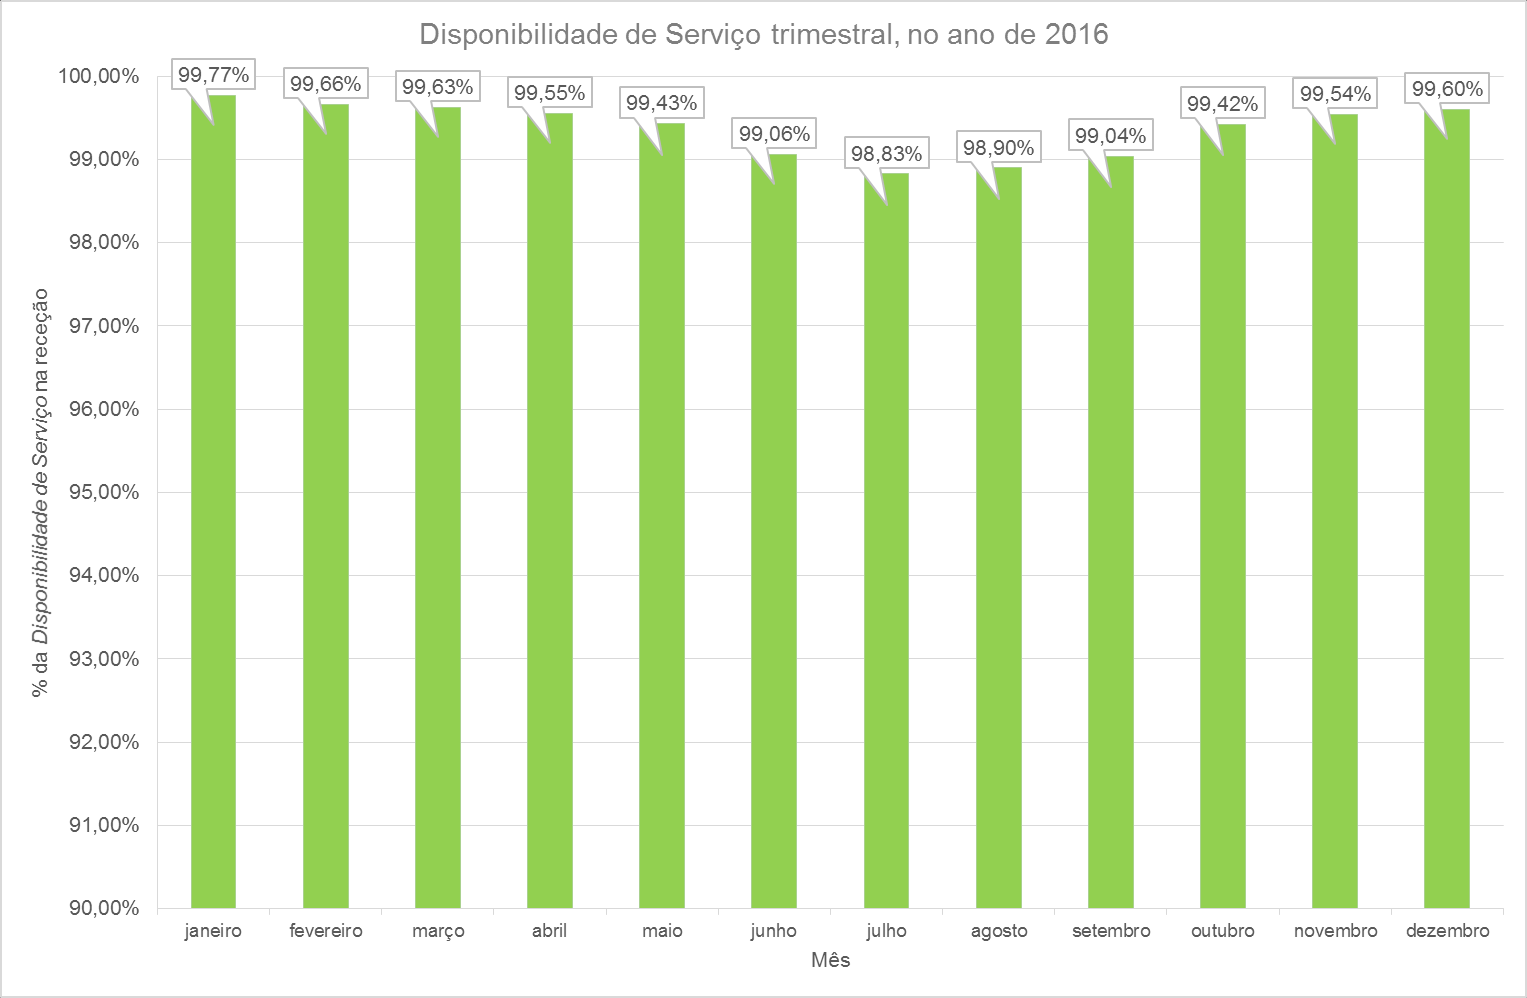 Figura 7 - Disponibilidade de Serviço, em cada mês, do ano 2016